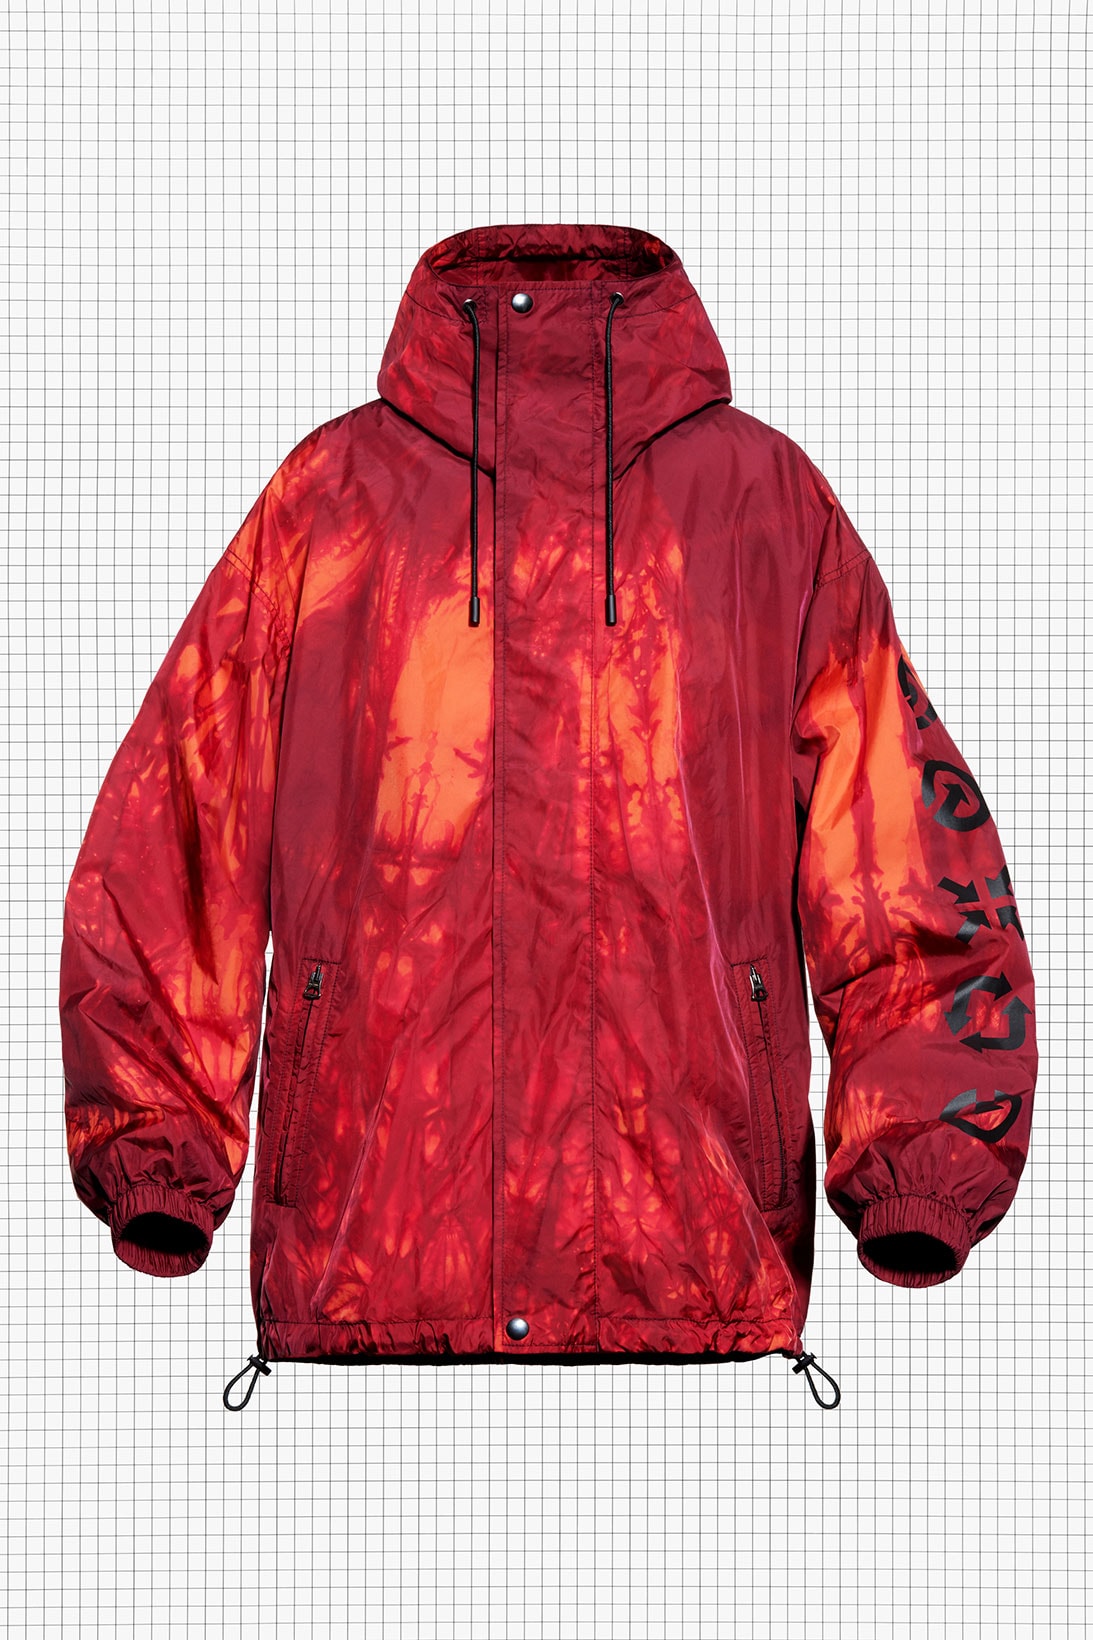 acne studios repurposed drop 3 hiking tie-dye parka jacket pink orange